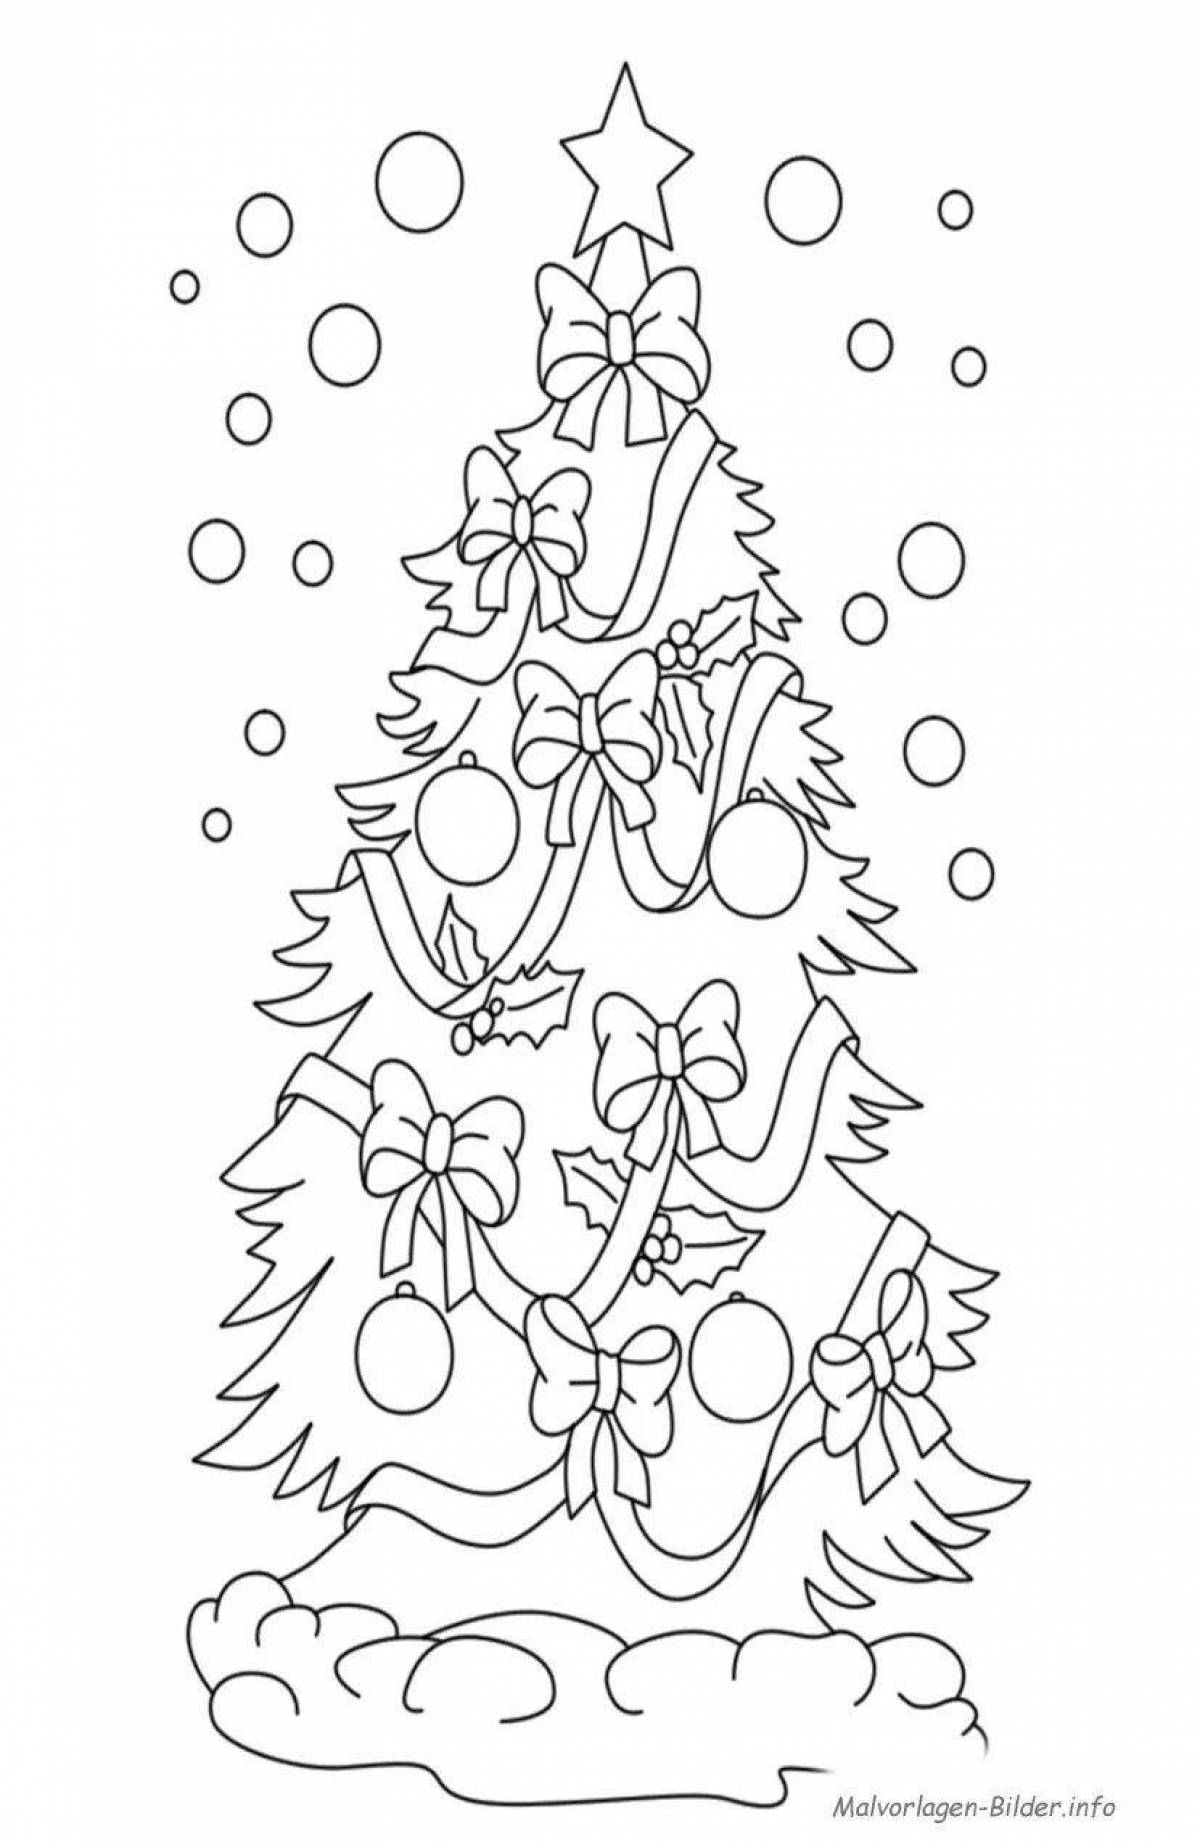 Раскраска «великолепная новогодняя елка» для детей 6-7 лет